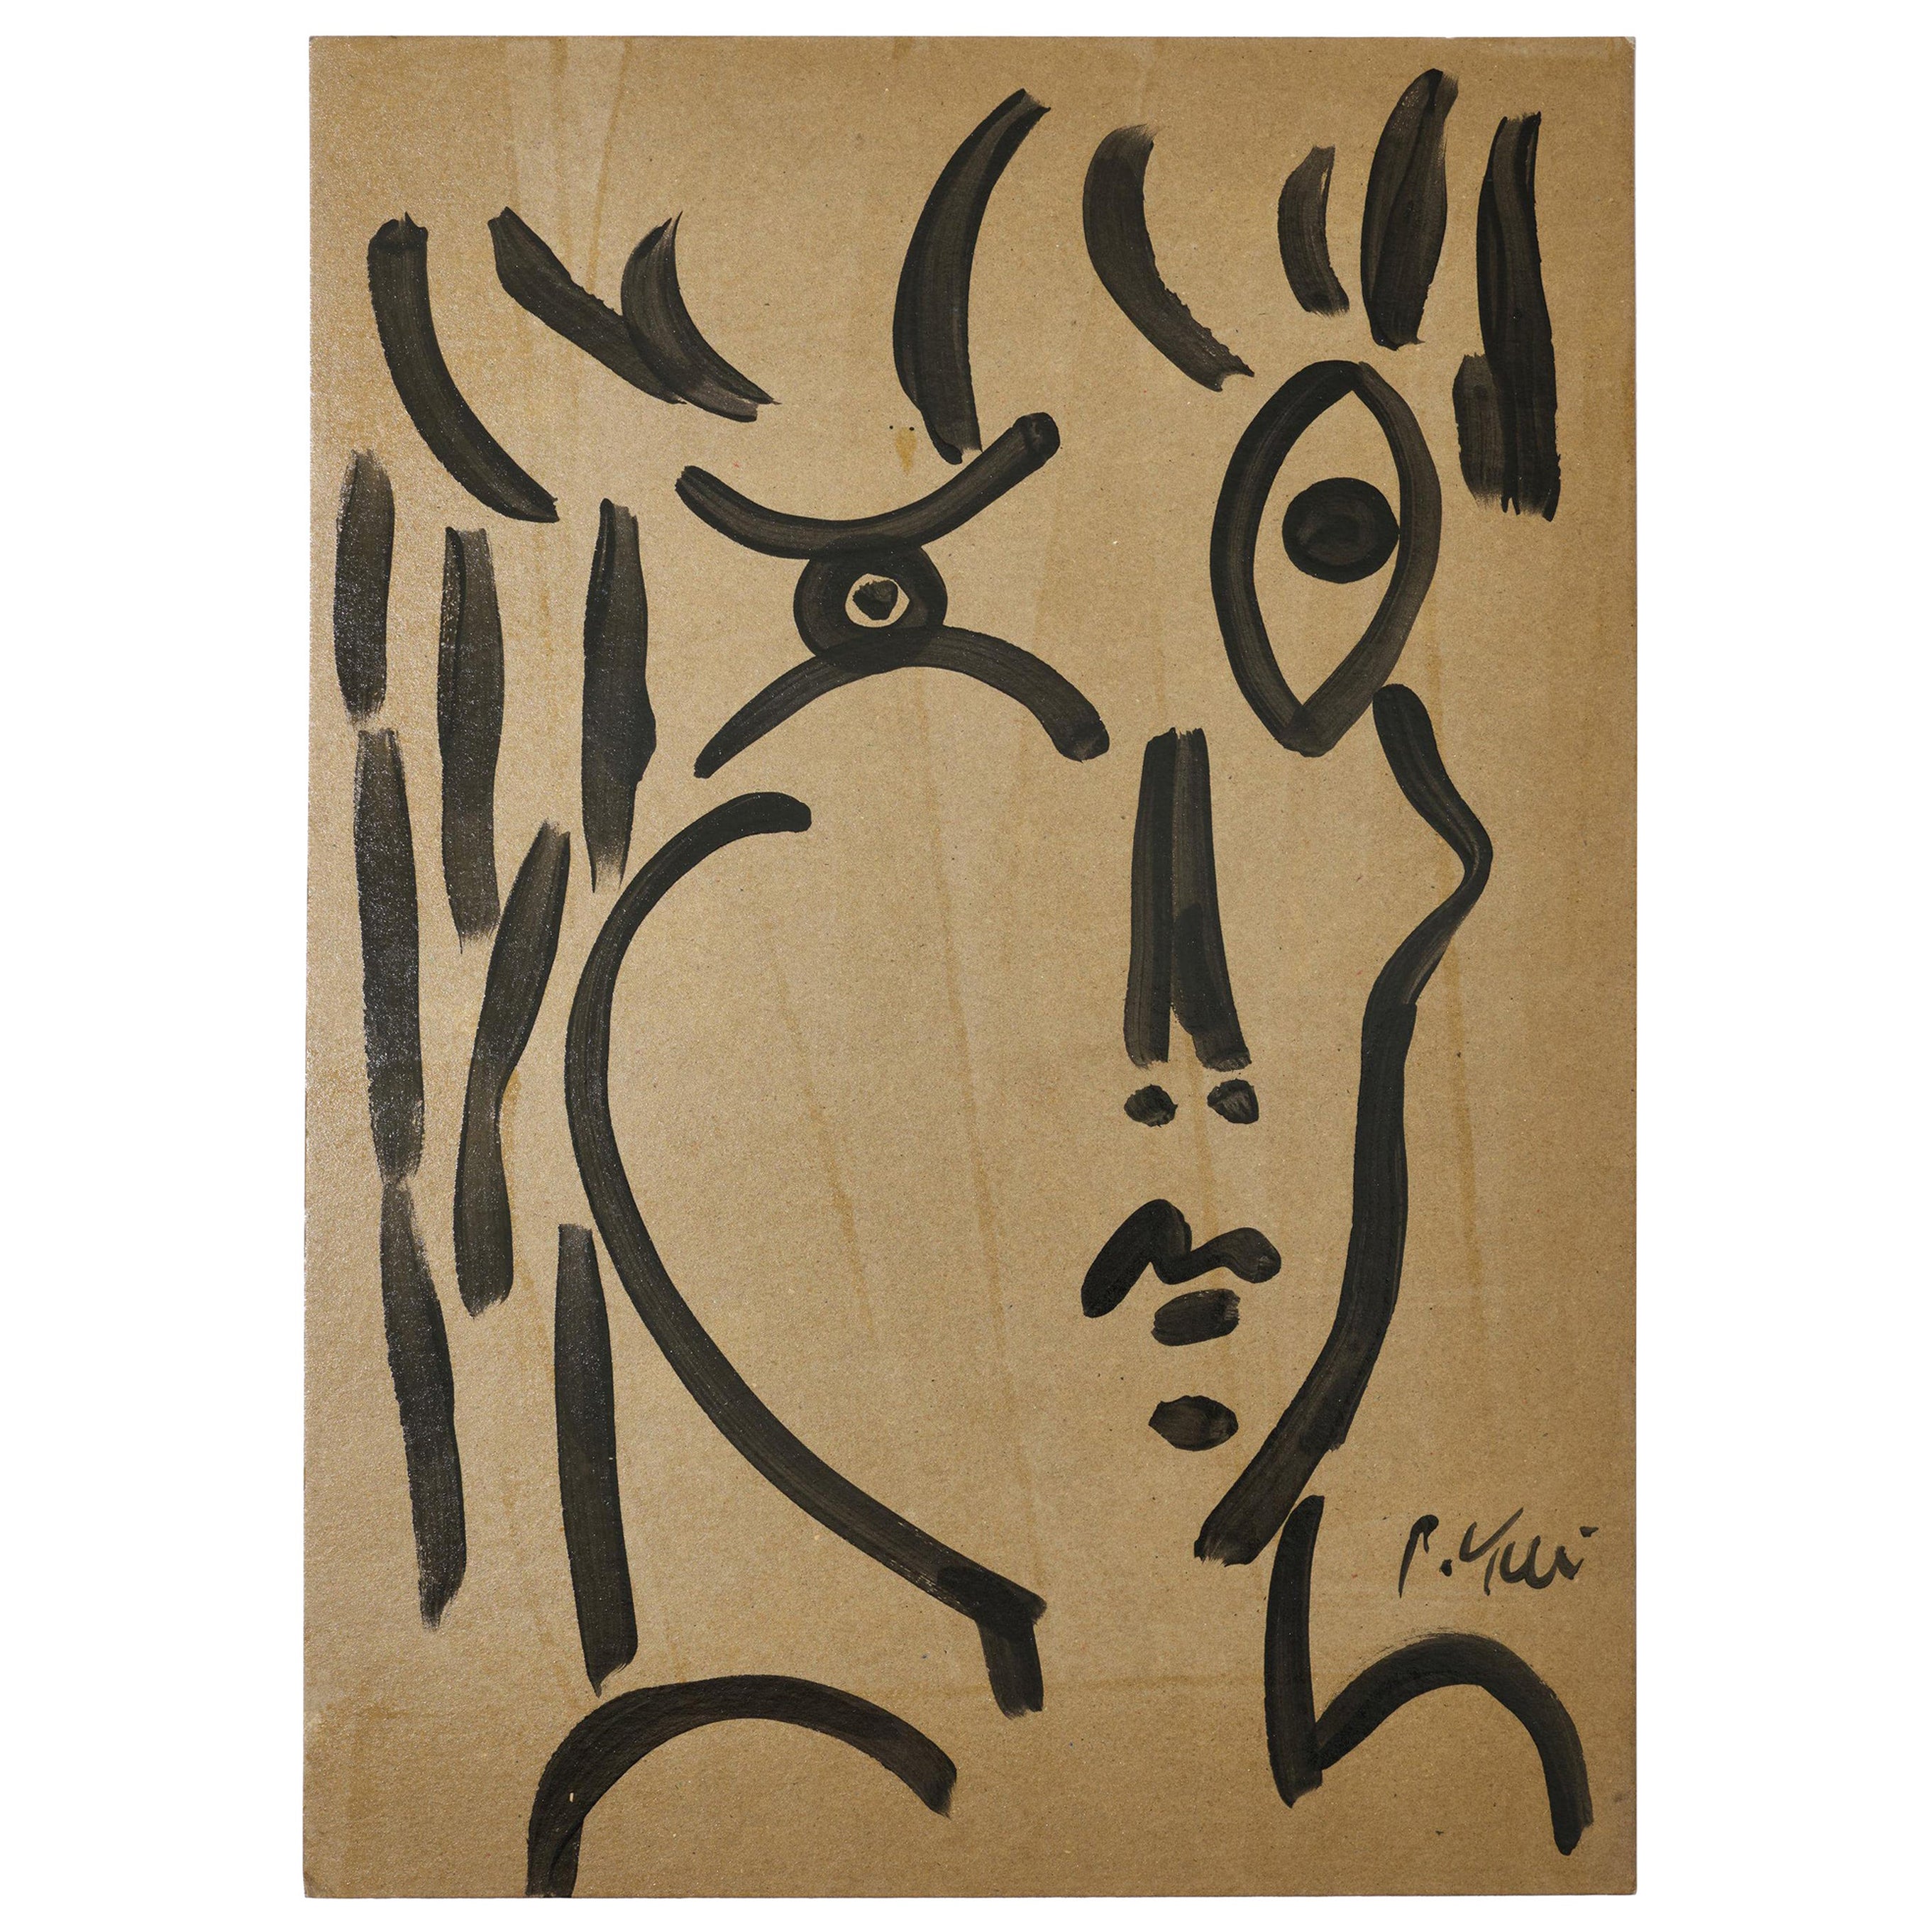 Gemälde von Peter Keil, Acryl auf grauem Papier, Deutschland, signiert, ca. 1974, ohne Rahmen